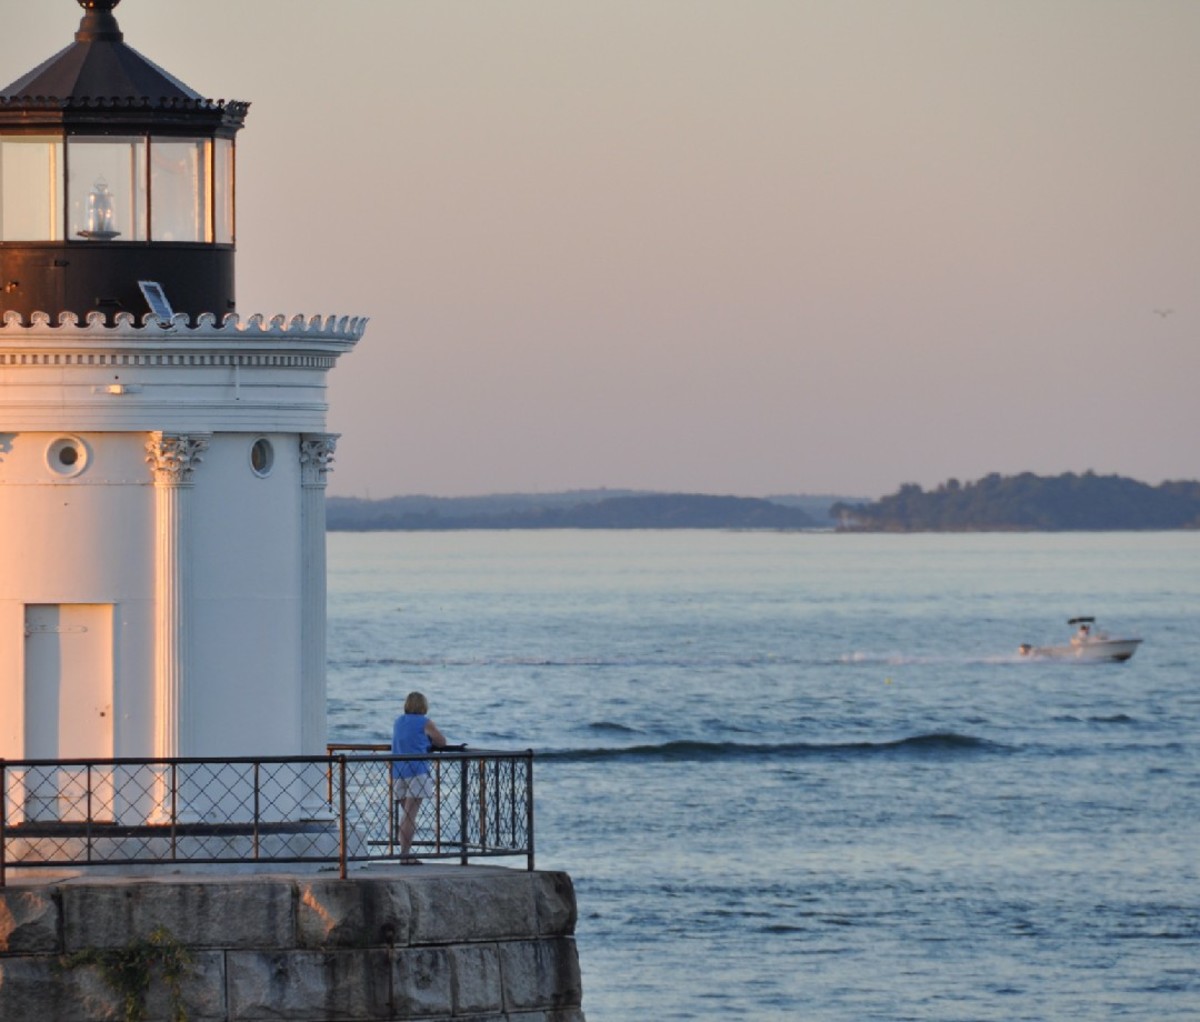 Portland Breakwater Lighthouse in Maine